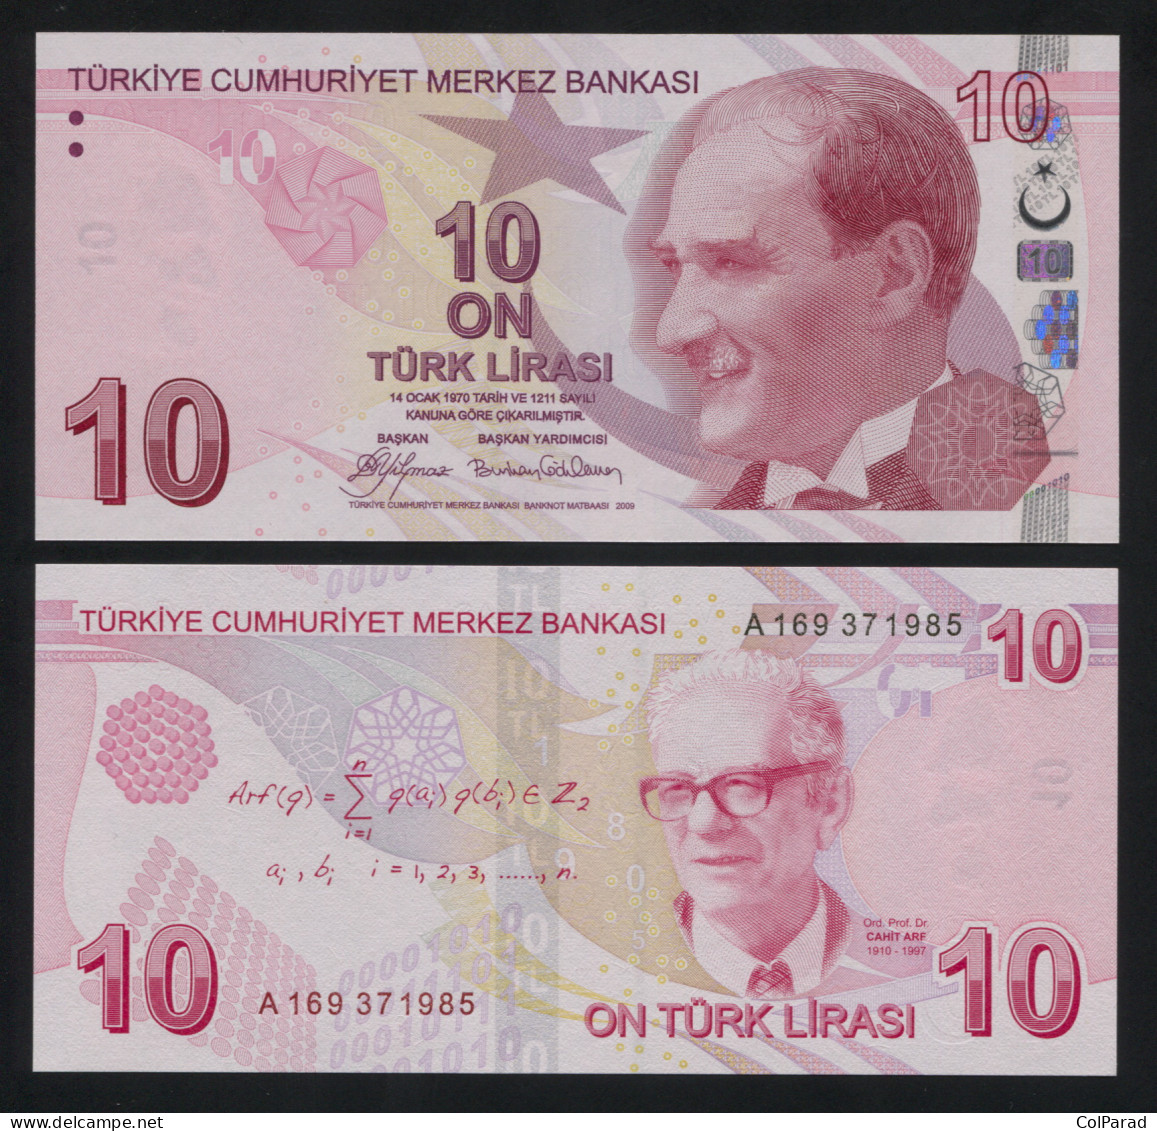 TURKEY 10 TÜRK LIRASI - 2009 - Paper Unc - P.223a Banknote - Turkey